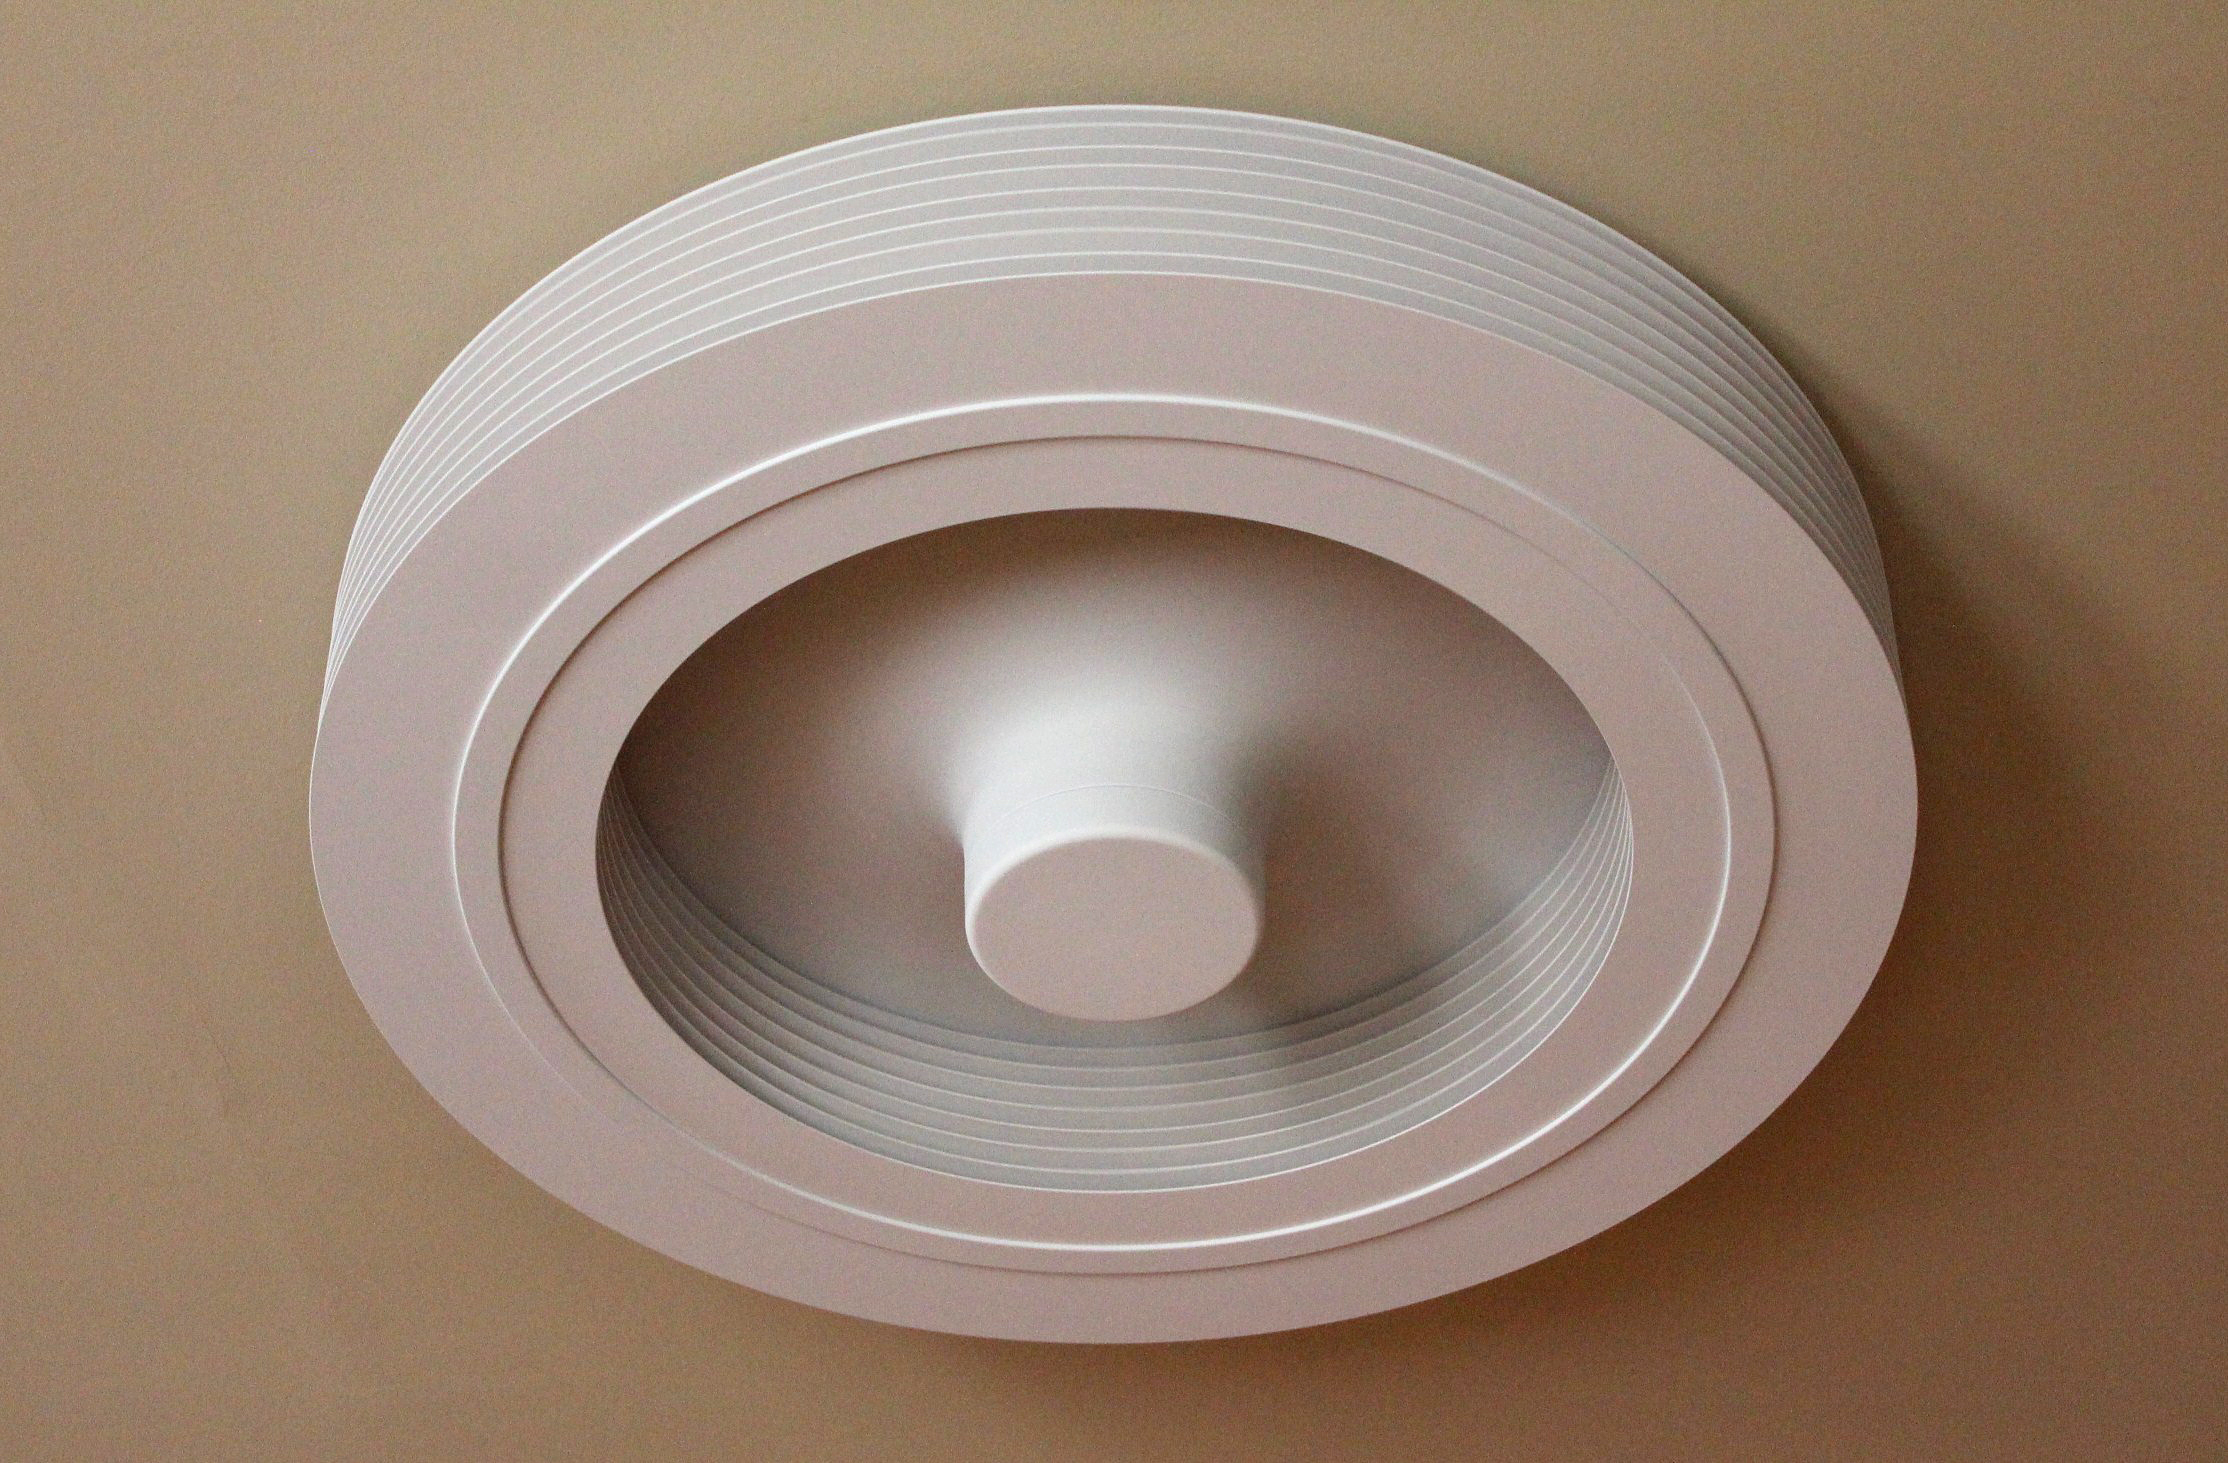 ceiling bladeless fan photo - 9